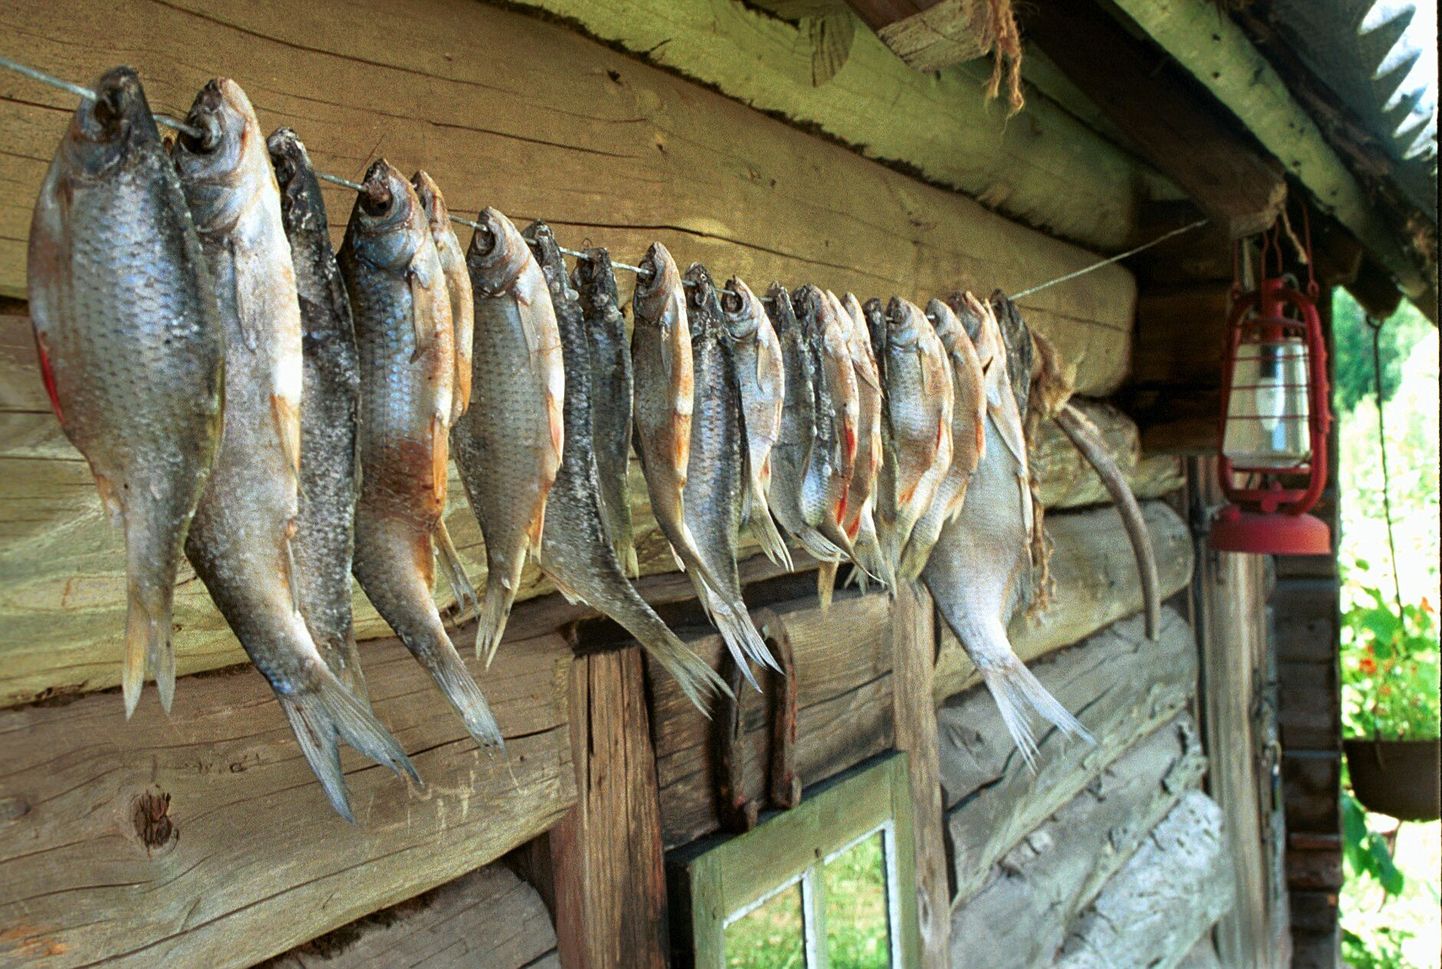 Üks tuntud Peipsi piirkonna maitseid on kahtlemata kuivatatud kala. Peipsimaa toidusuveniiri konkursil osalemiseks tuleb siiski välja mõelda mingi toode, see pakendada ning kujundada etikett.